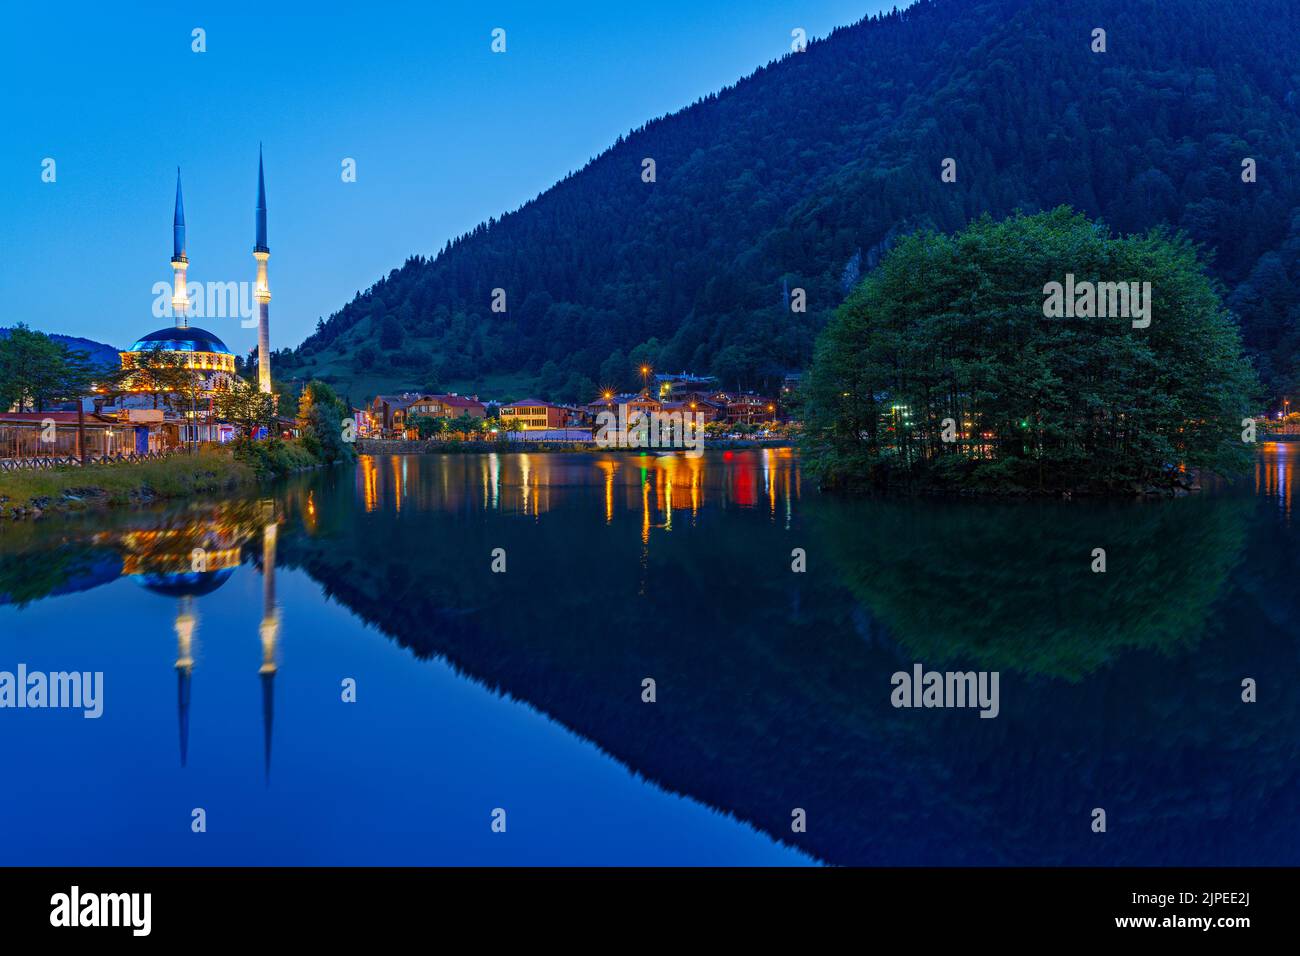 Moschea Uzungol e il suo riflesso in acqua al crepuscolo nella città di montagna di Uzungol, Turchia Foto Stock